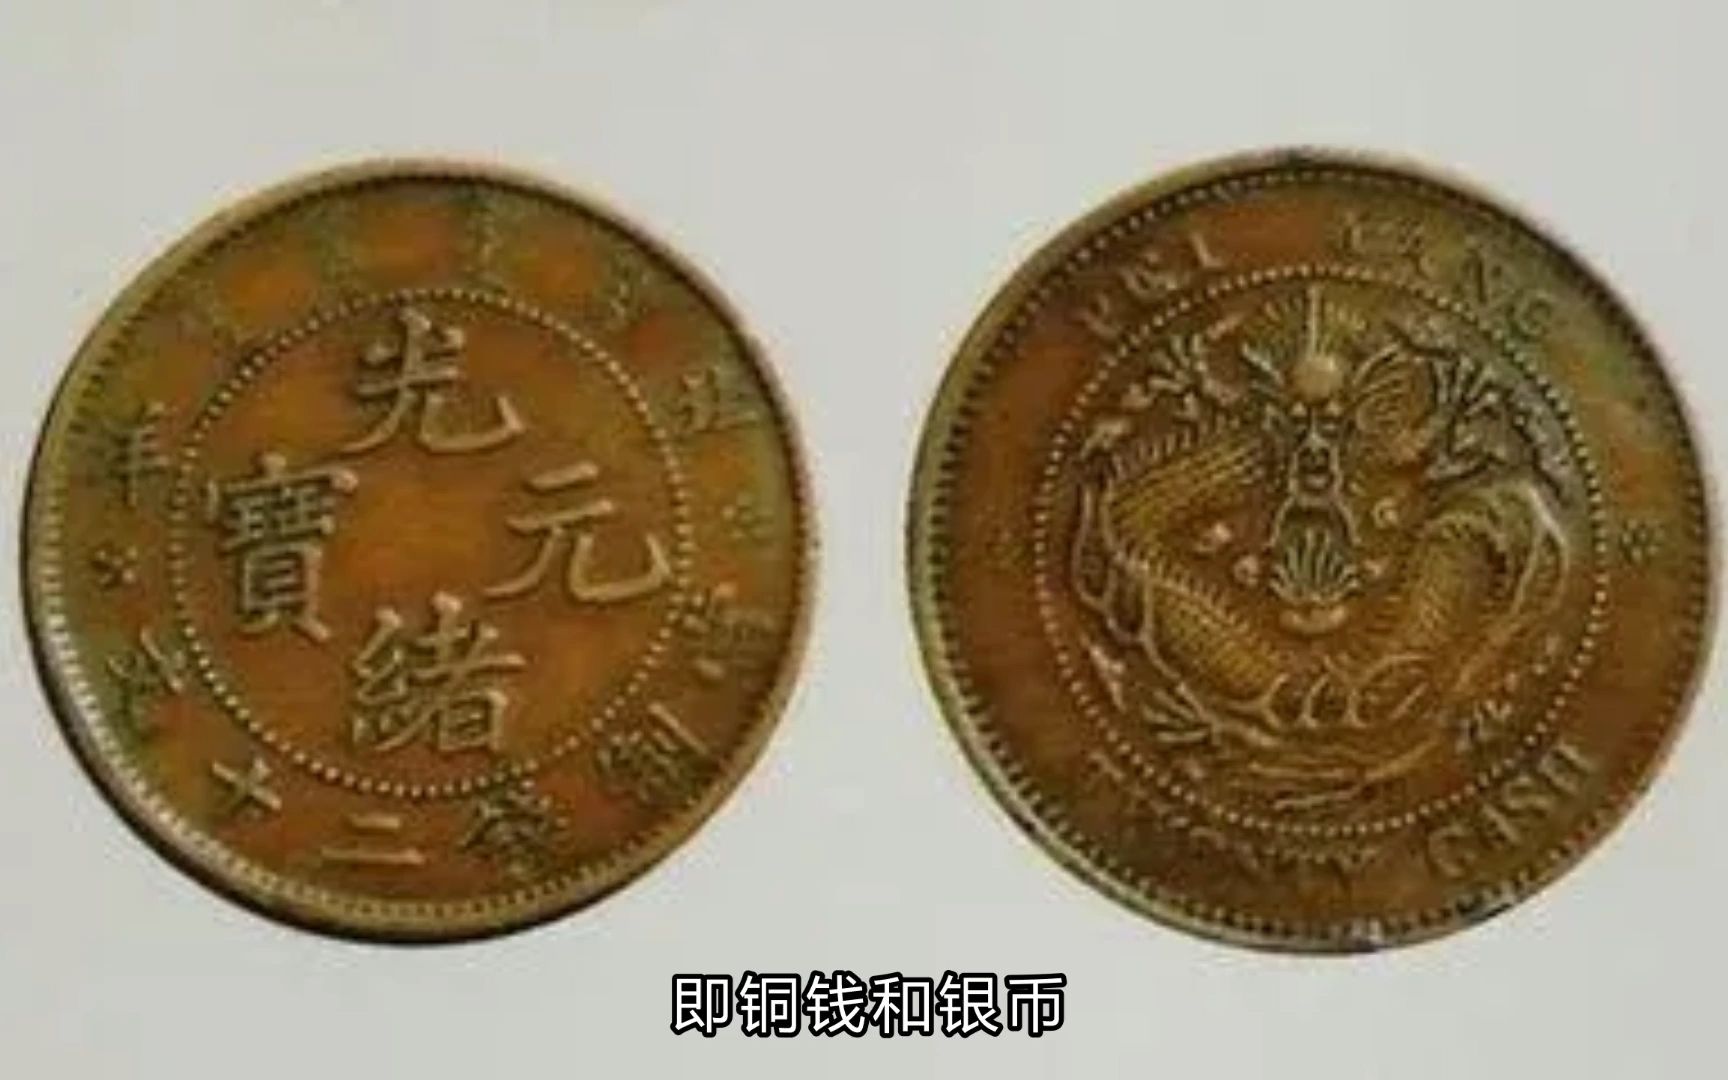 最小的铜钱图片价格图片